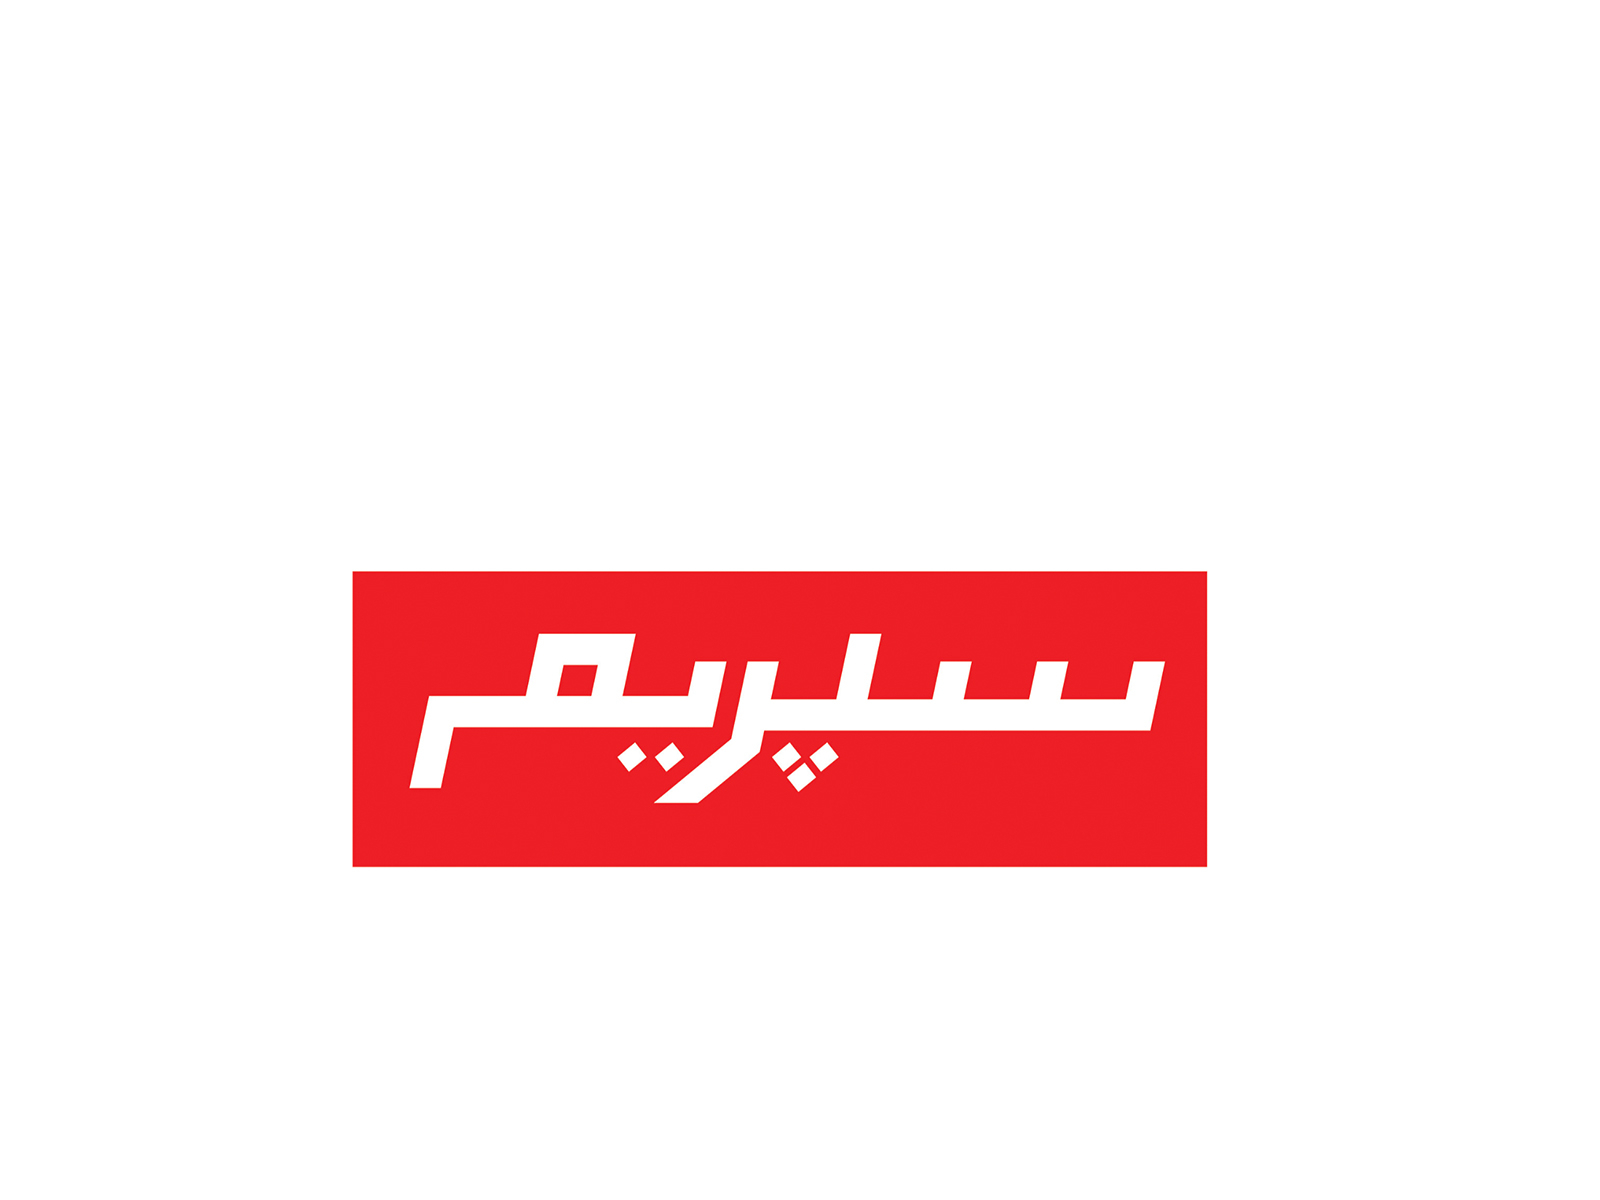 Supreme Logo Font